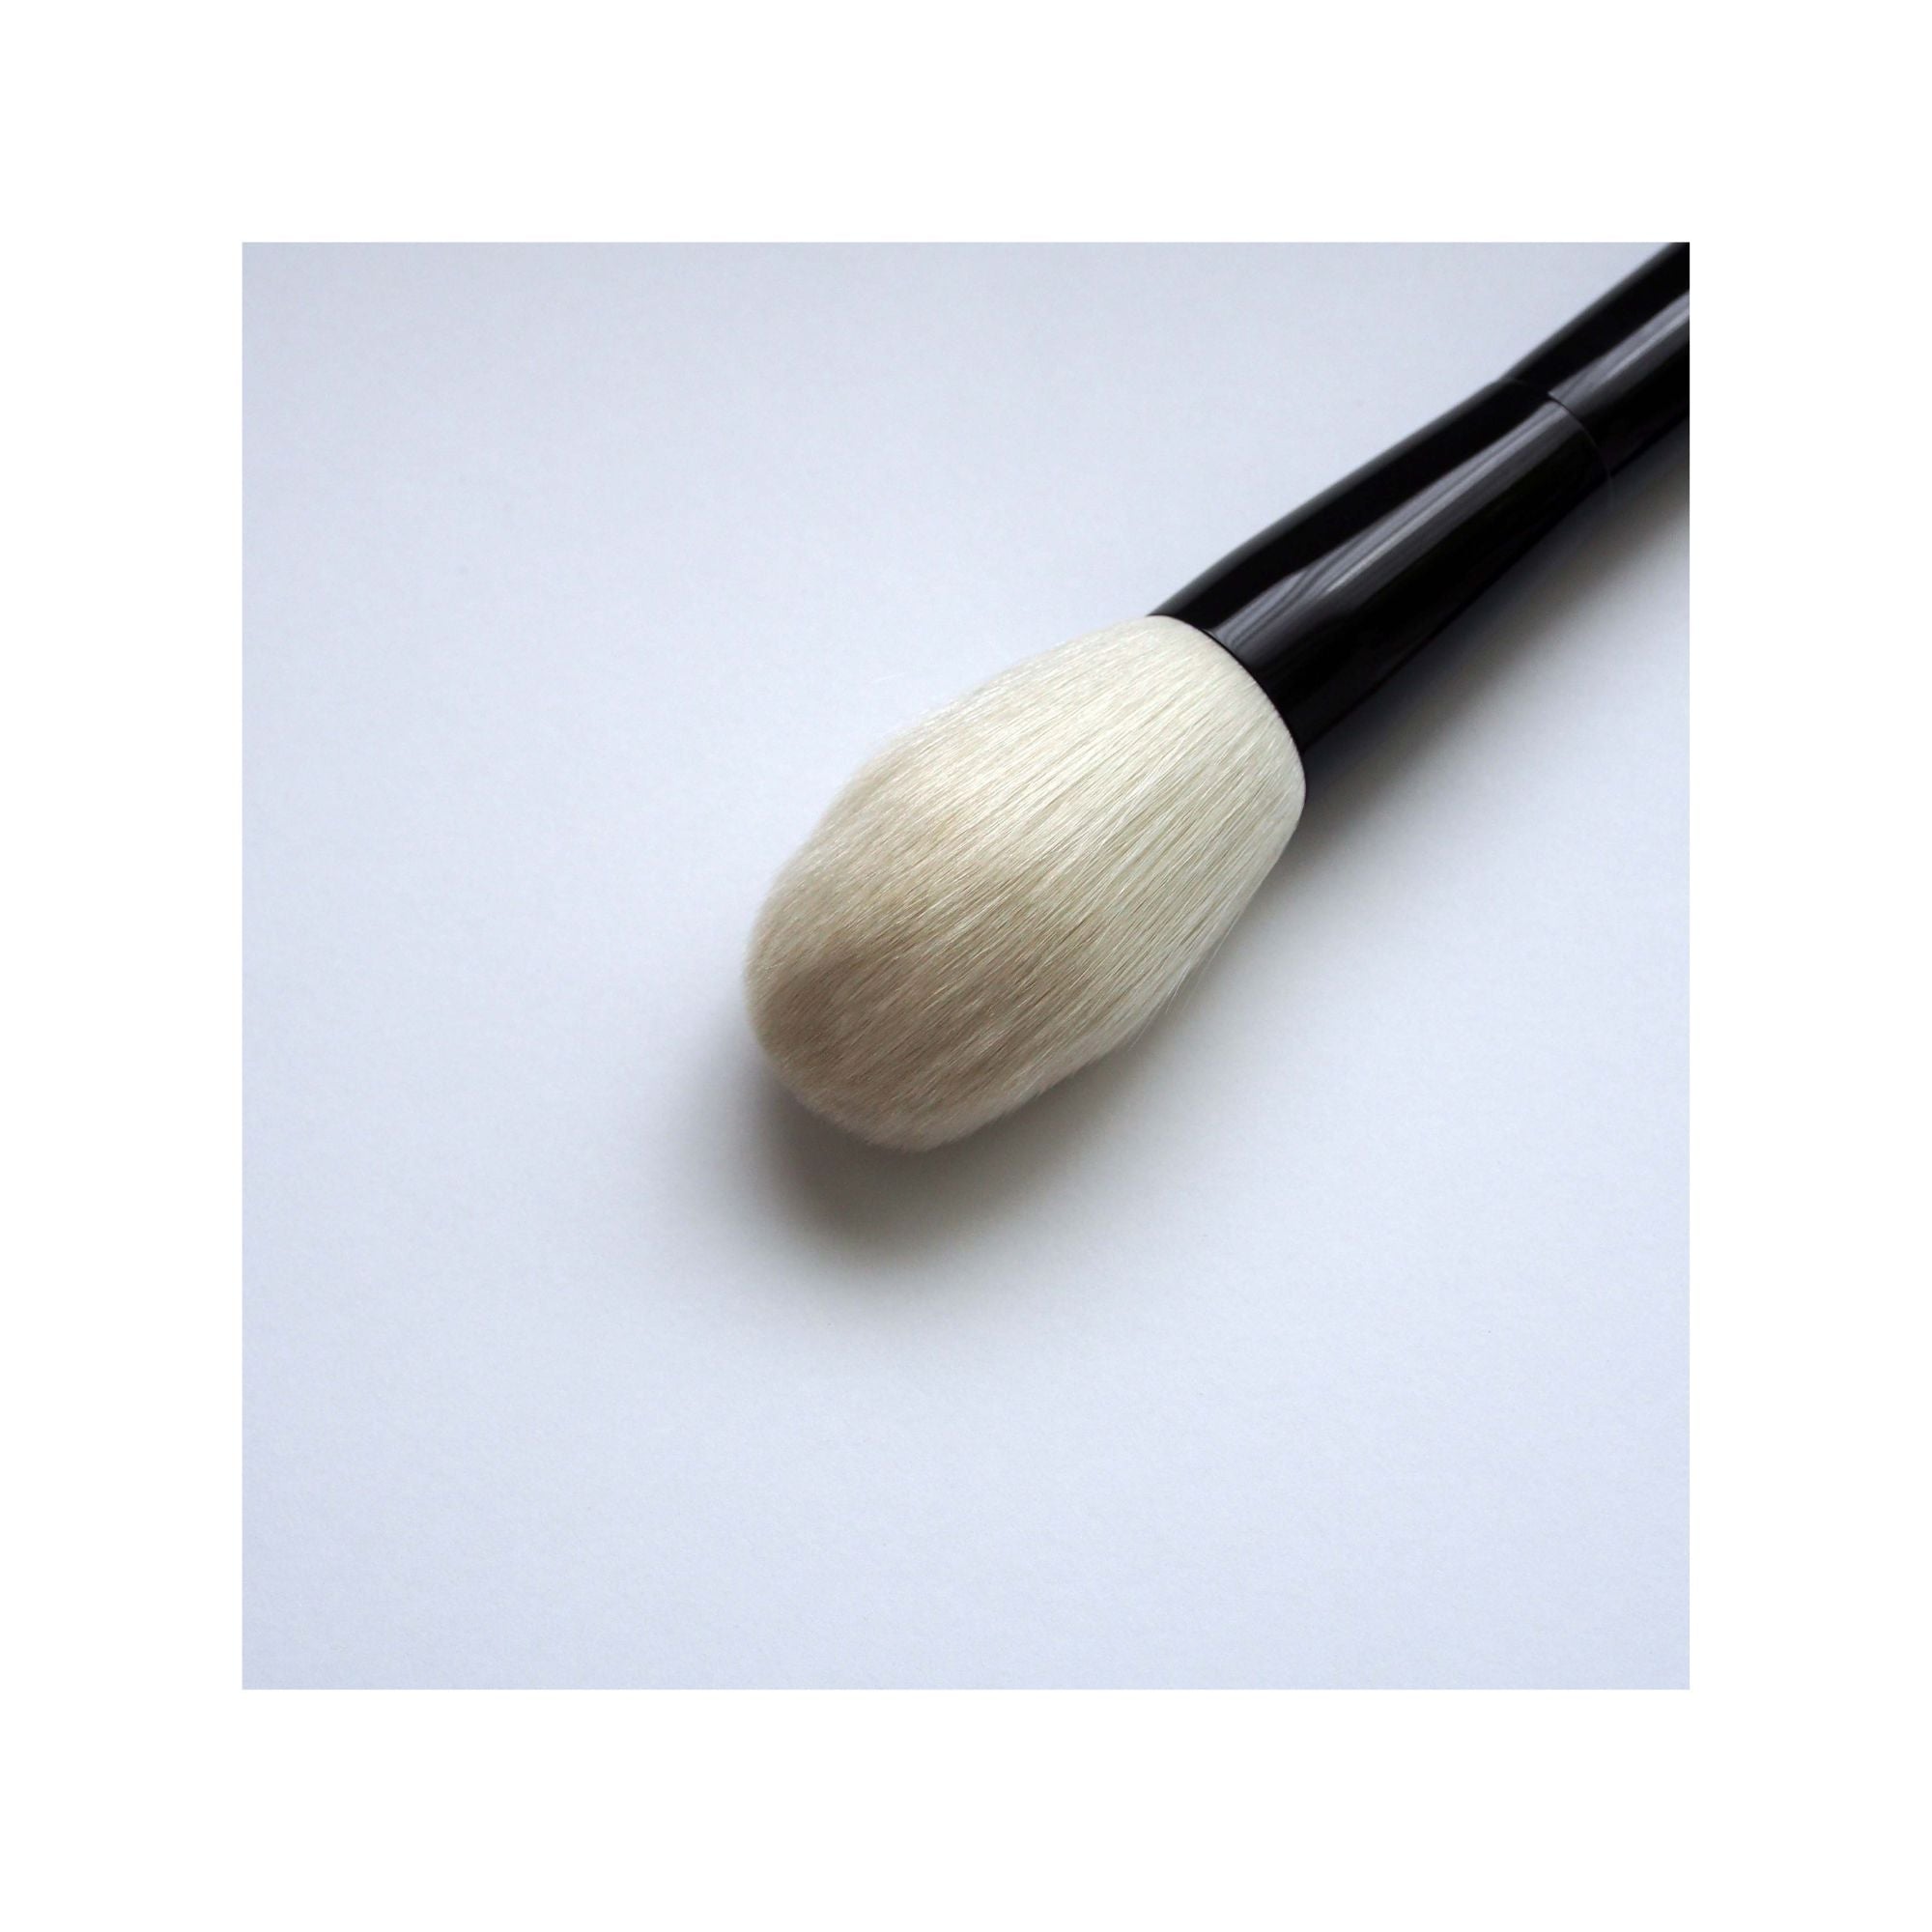 Koyudo Yoshiki Saibikoho Sakura Makie Powder Brush (Limited Edition) - Fude Beauty, Japanese Makeup Brushes